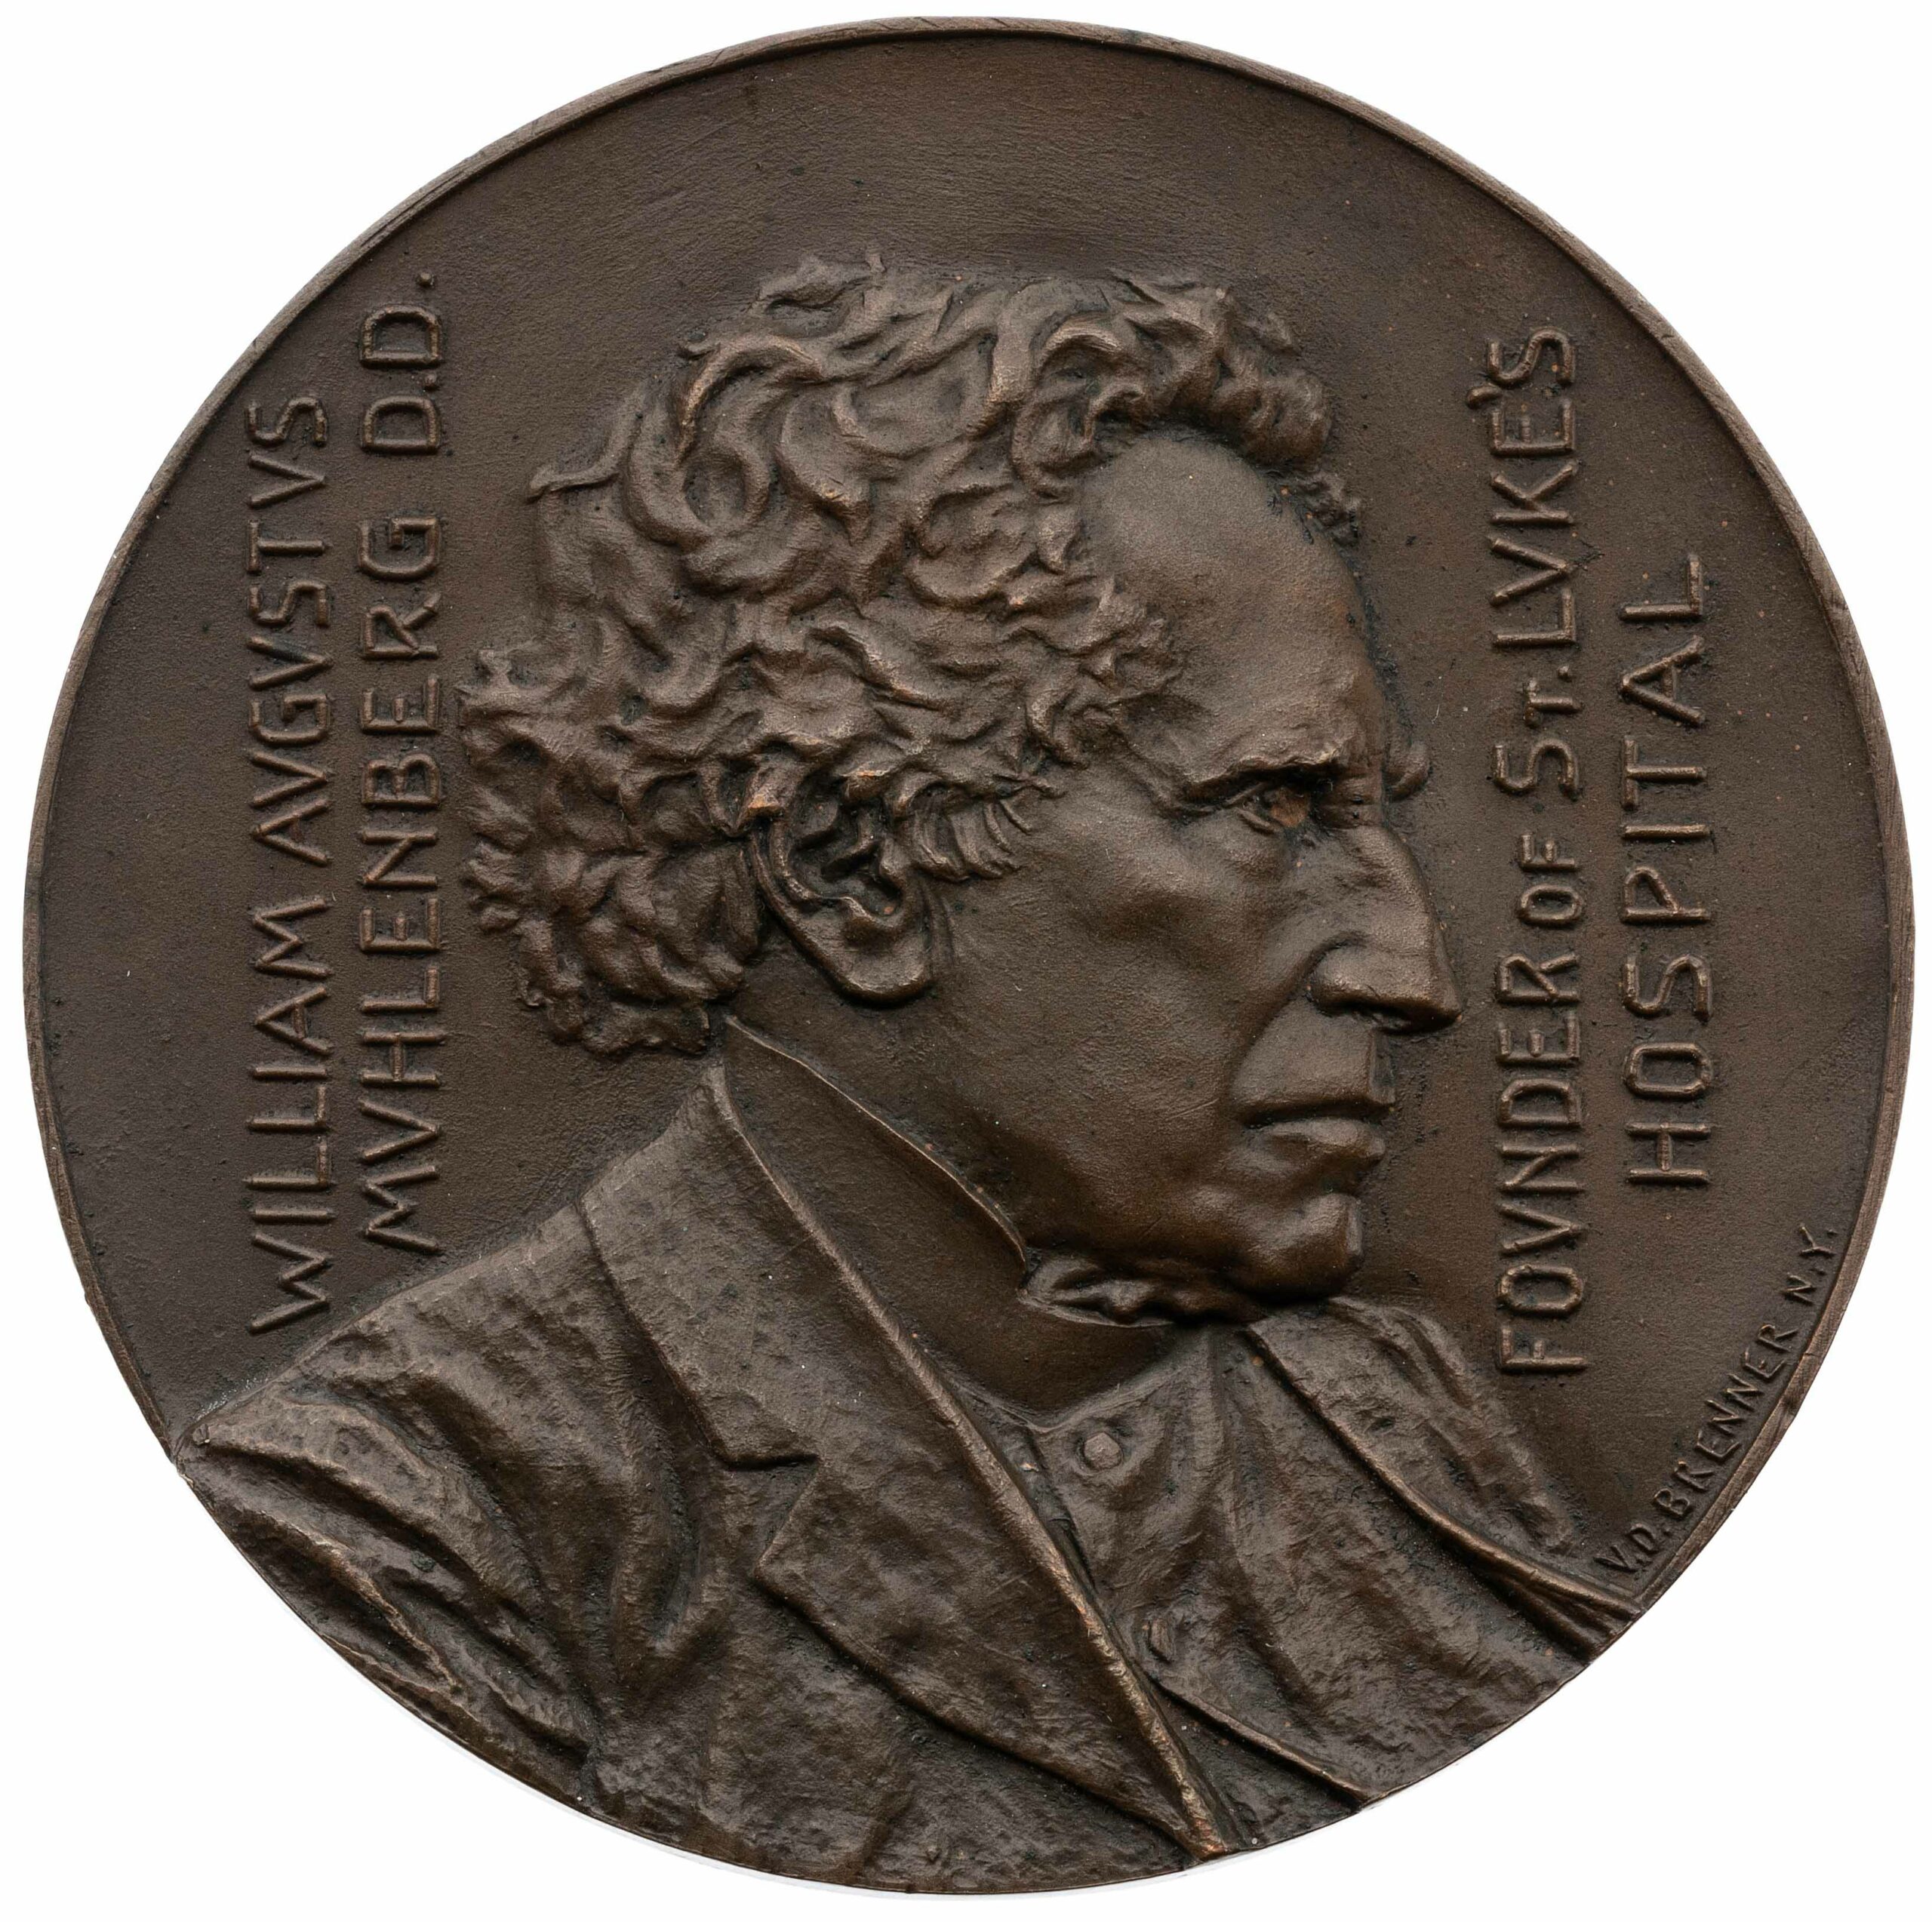 Hahlo-82-91, Dr. Muhlenberg medal